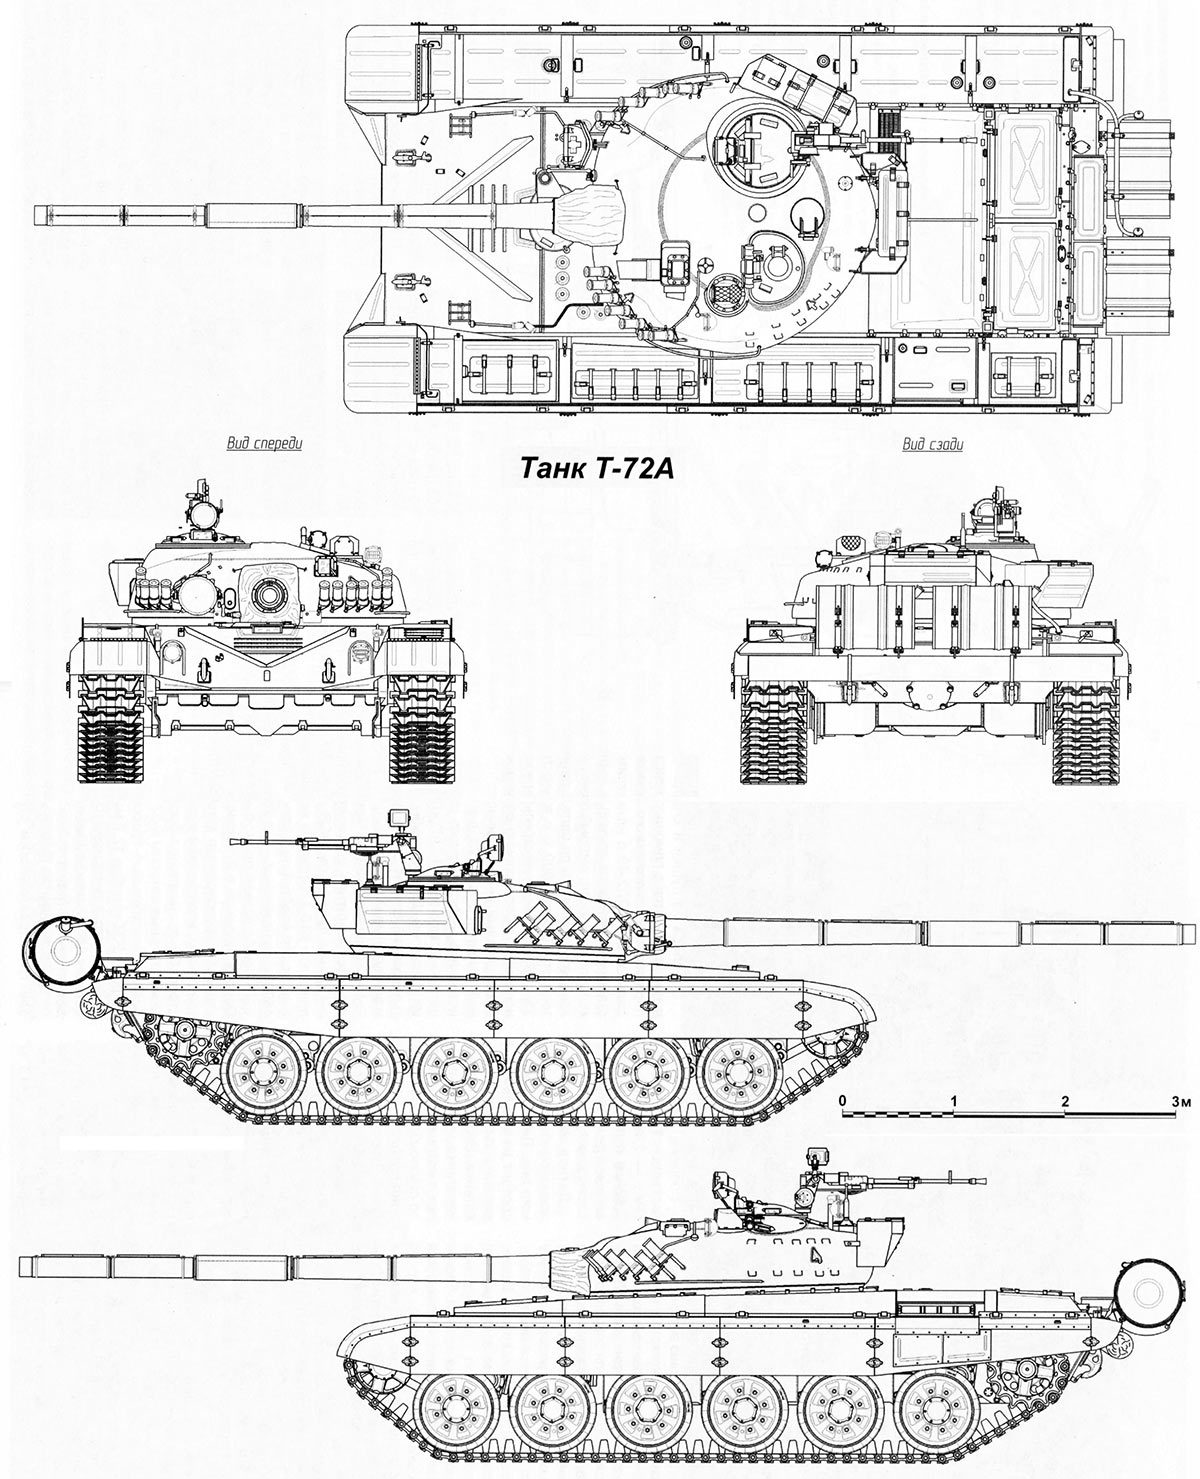 Чертеж основного боевого танка Т-72